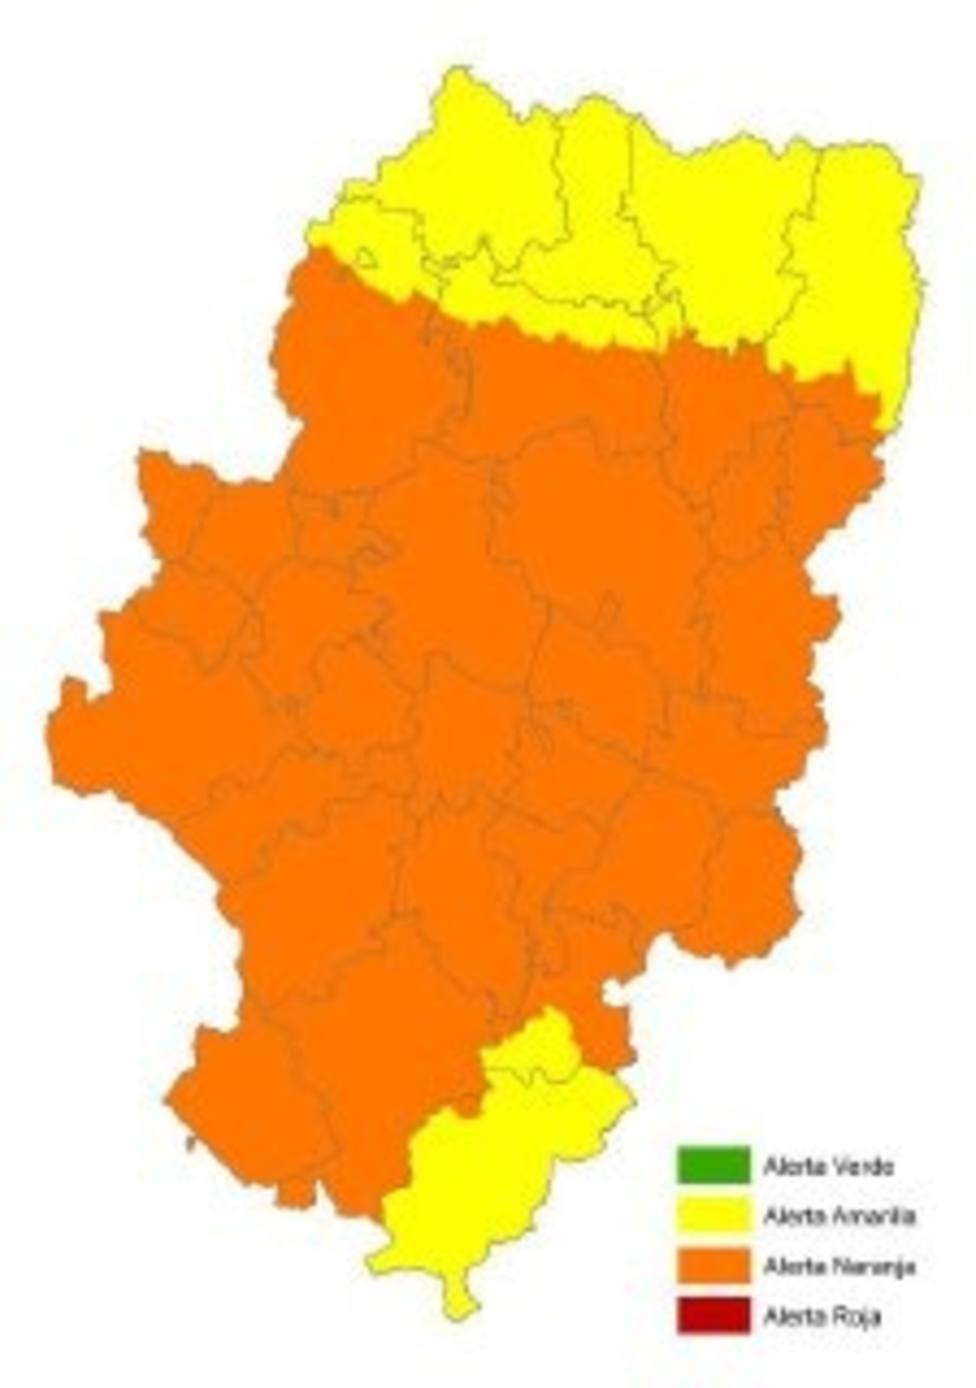 Decretado El Nivel De Alerta Naranja Por El Peligro De Incendios Forestales En Casi Todo Aragón 